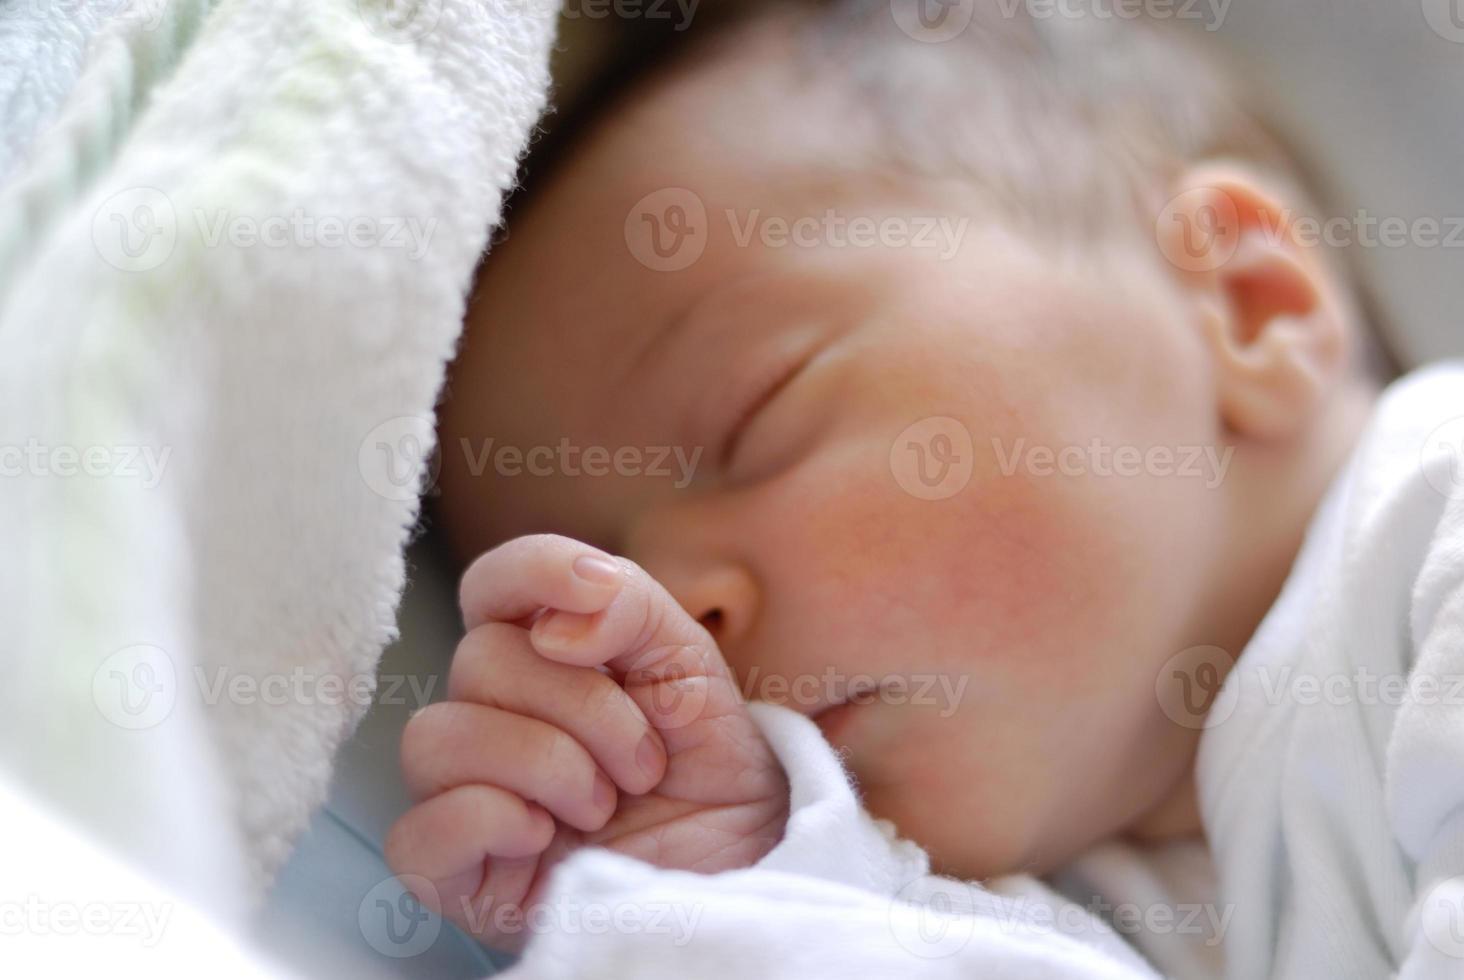 neonata nel letto hostpital che dorme foto